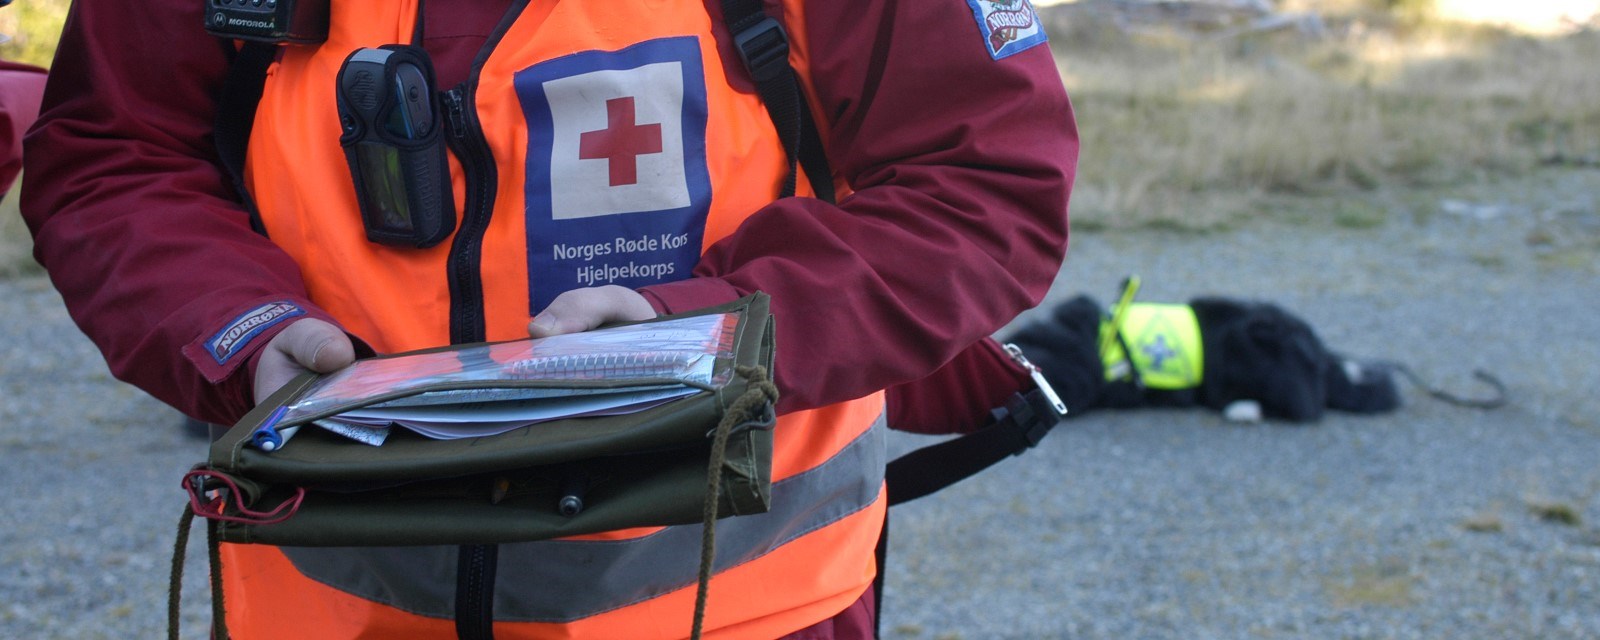 En person med hjelpekorpsuniform holder et kart